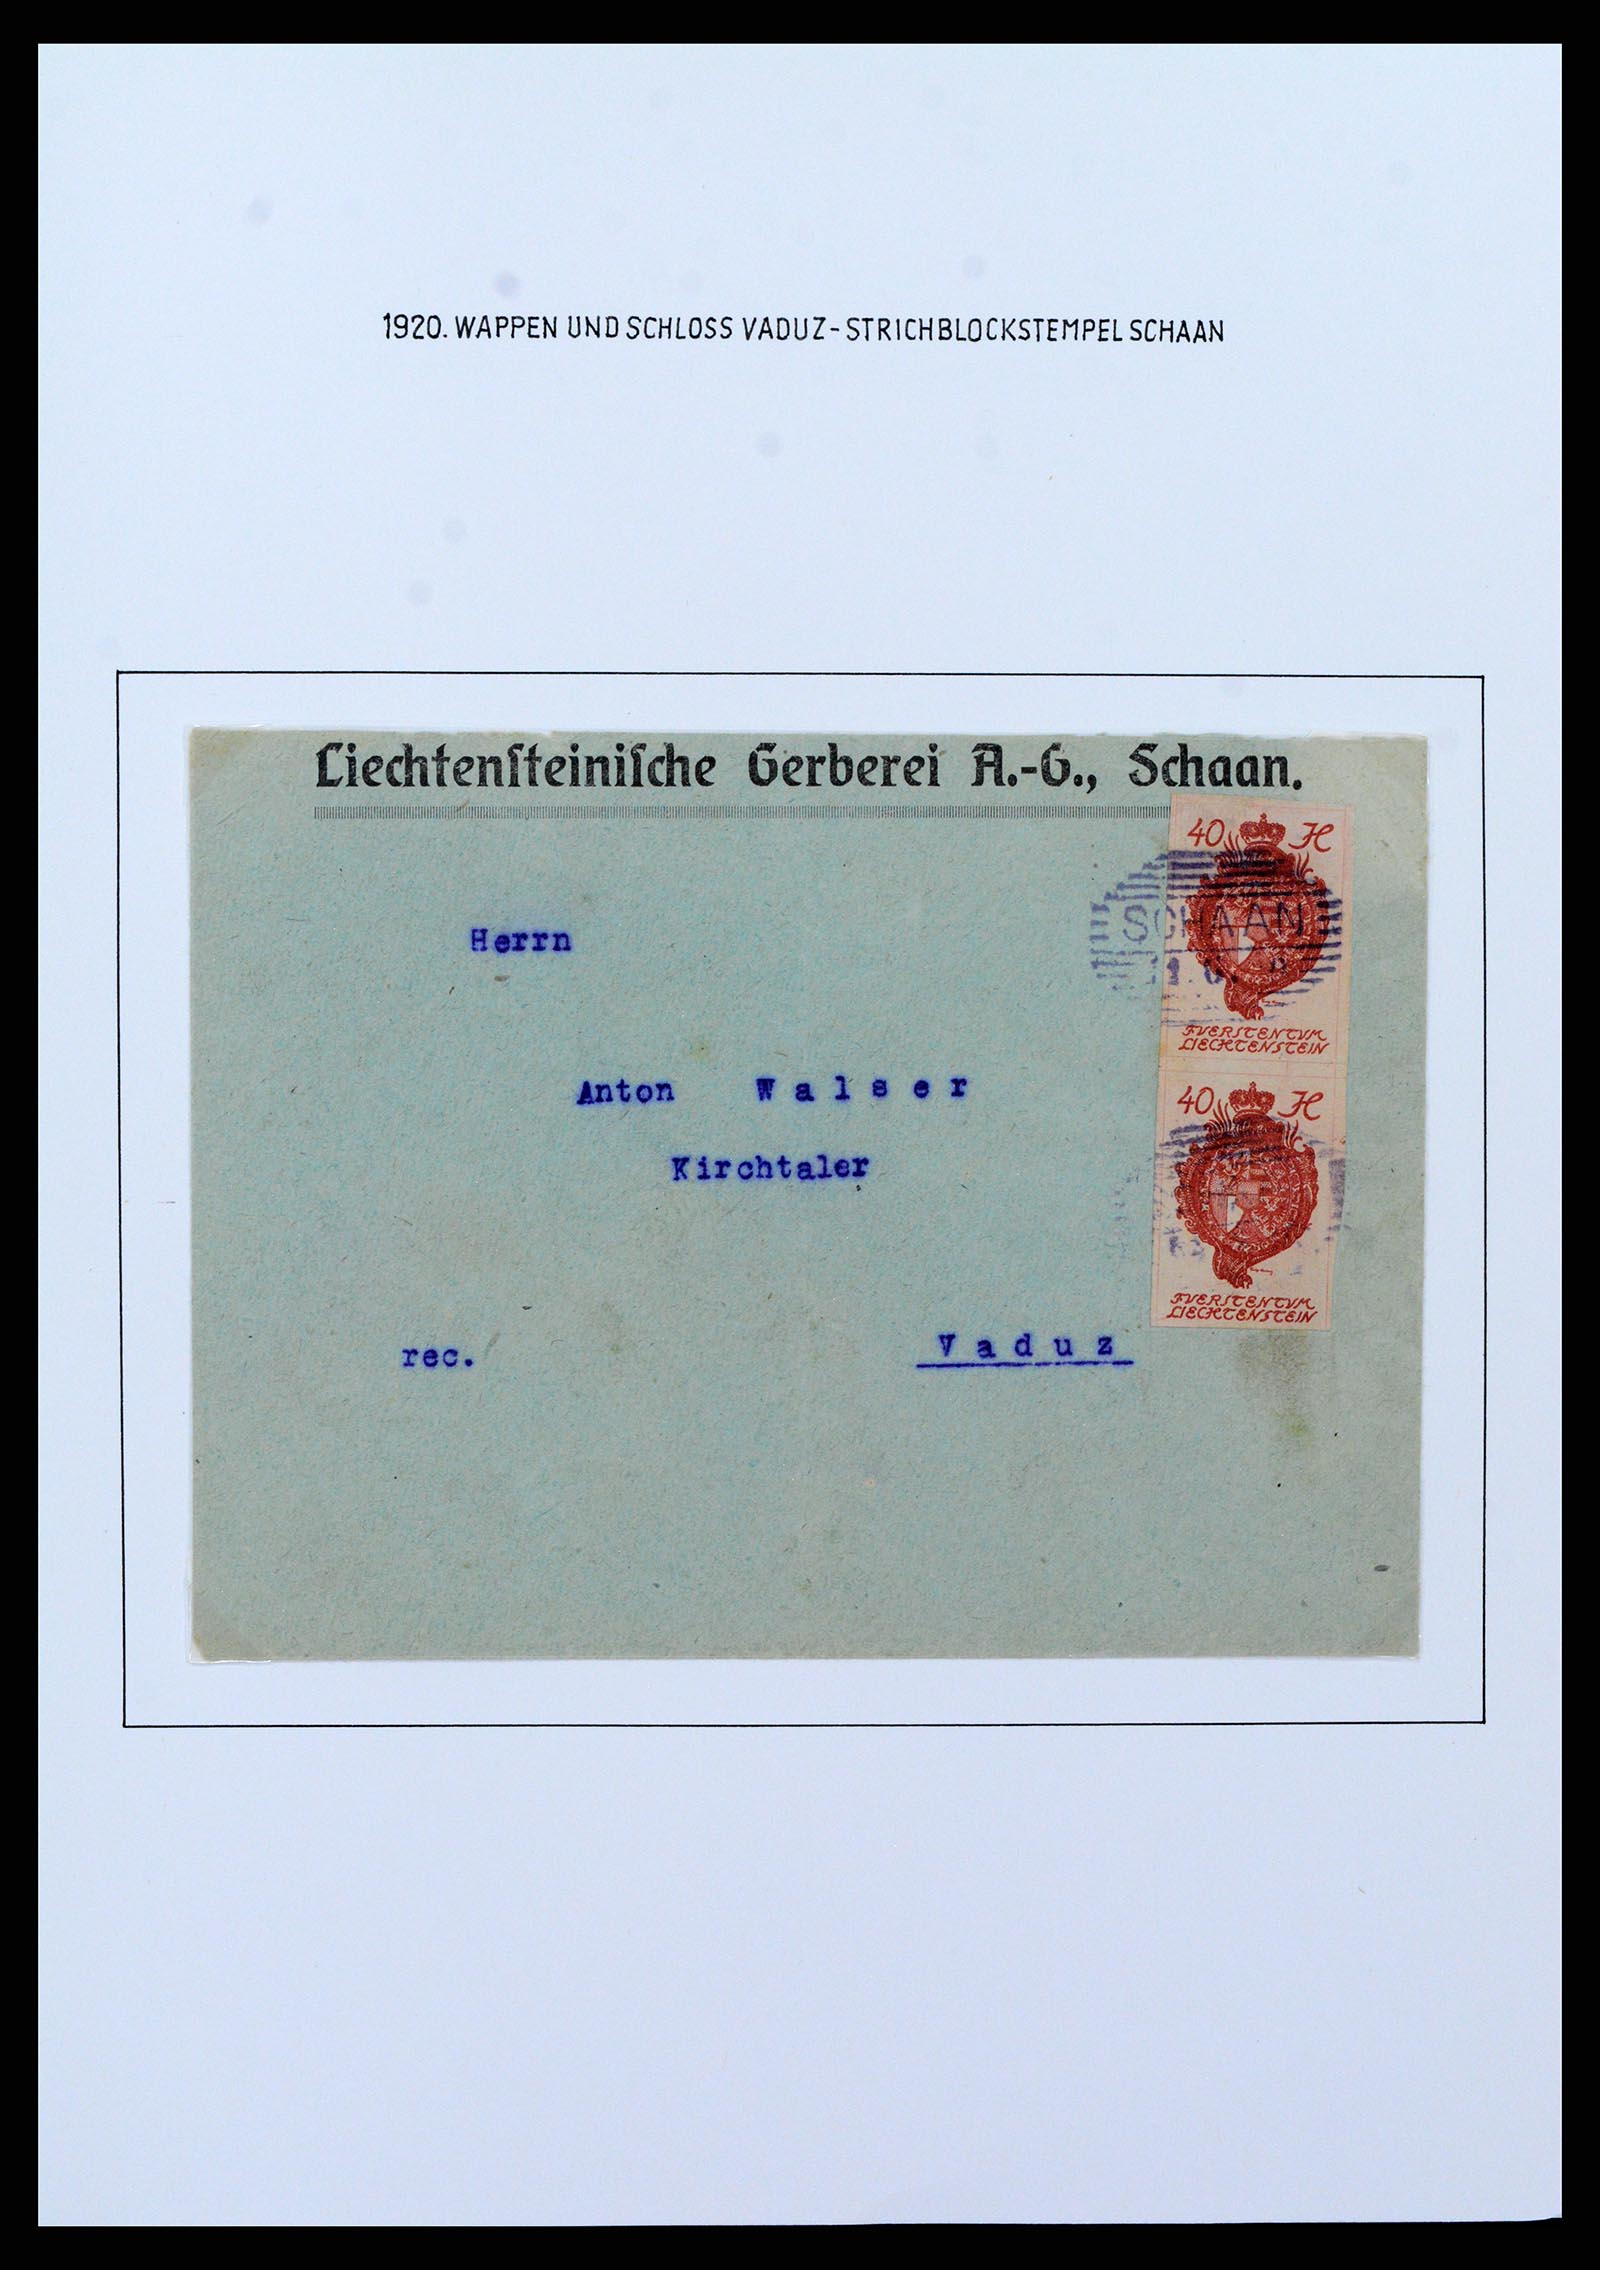 37150 0070 - Stamp collection 37150 Liechtenstein supercollection 1912-1962.